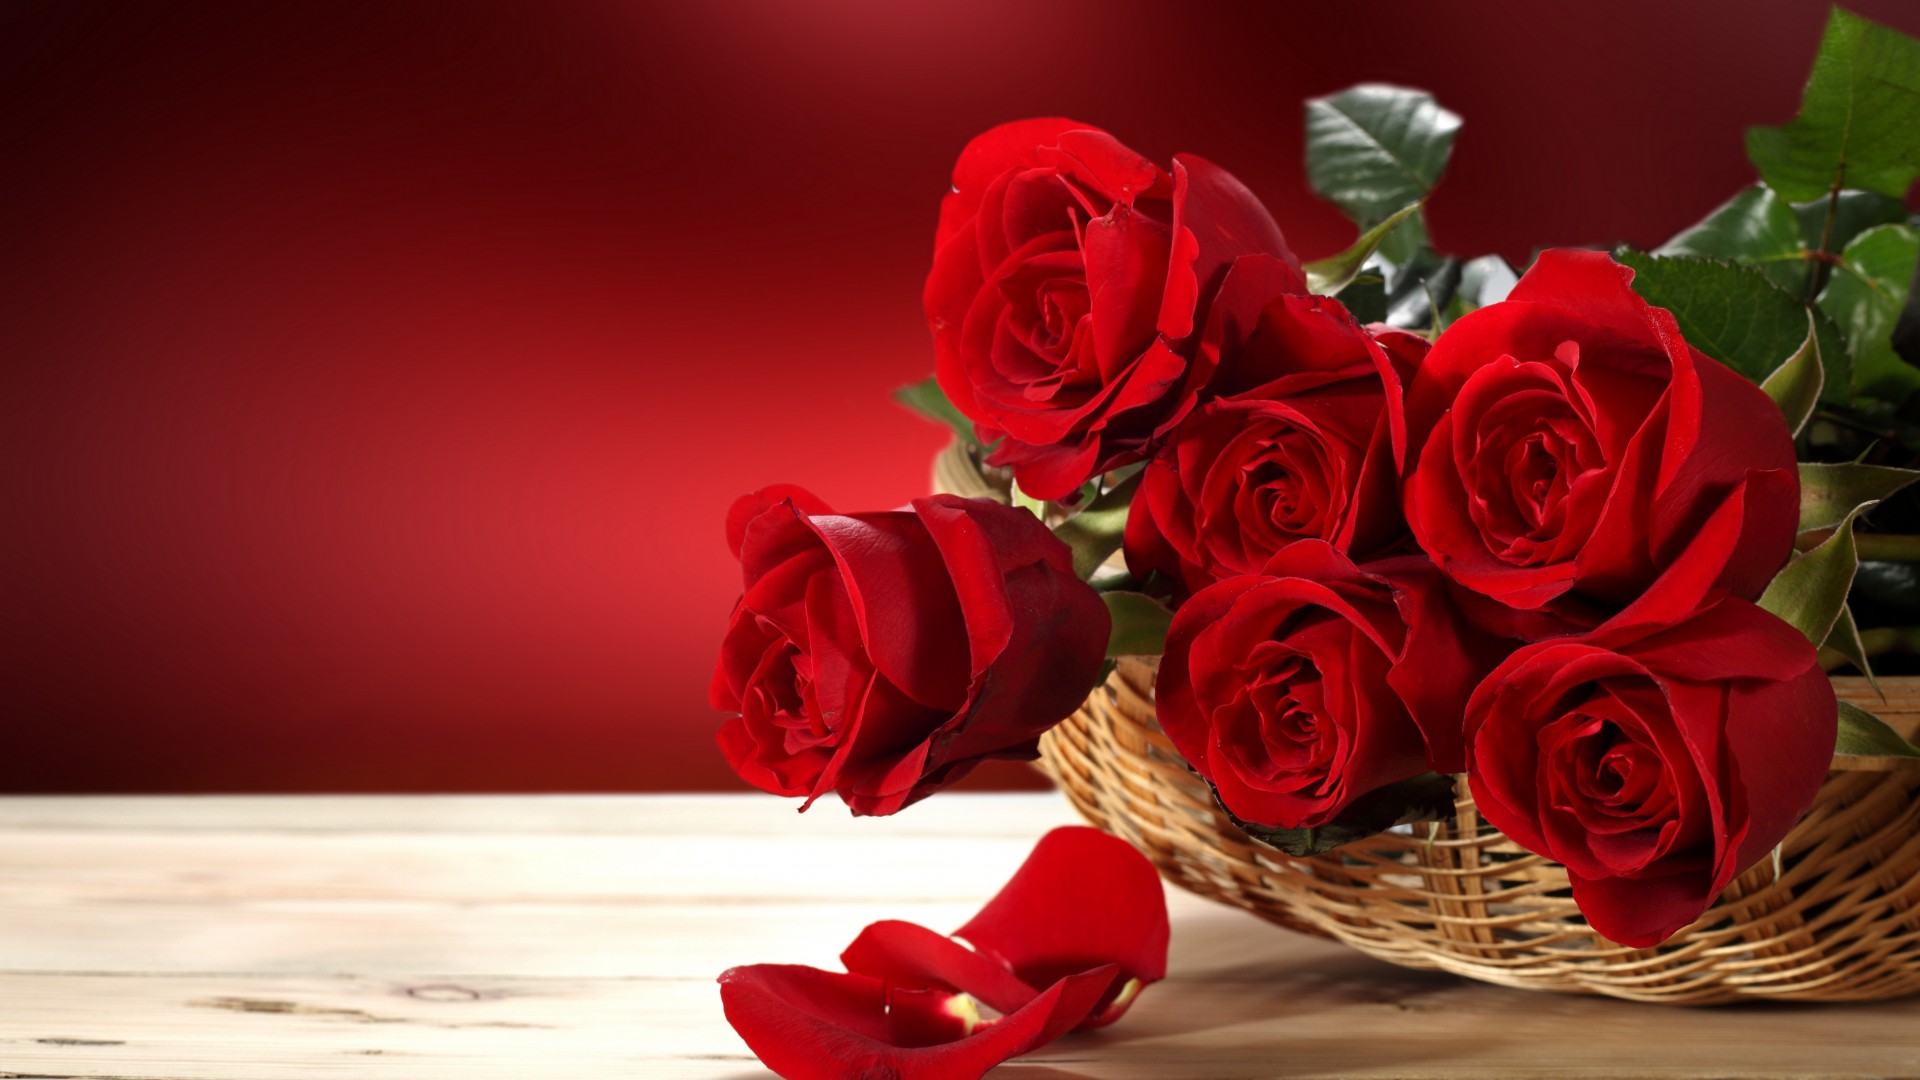 Розы, 5k, 4k, цветочный букет, красный, Roses, 5k, 4k wallpaper, Flower bouquet, red (horizontal)